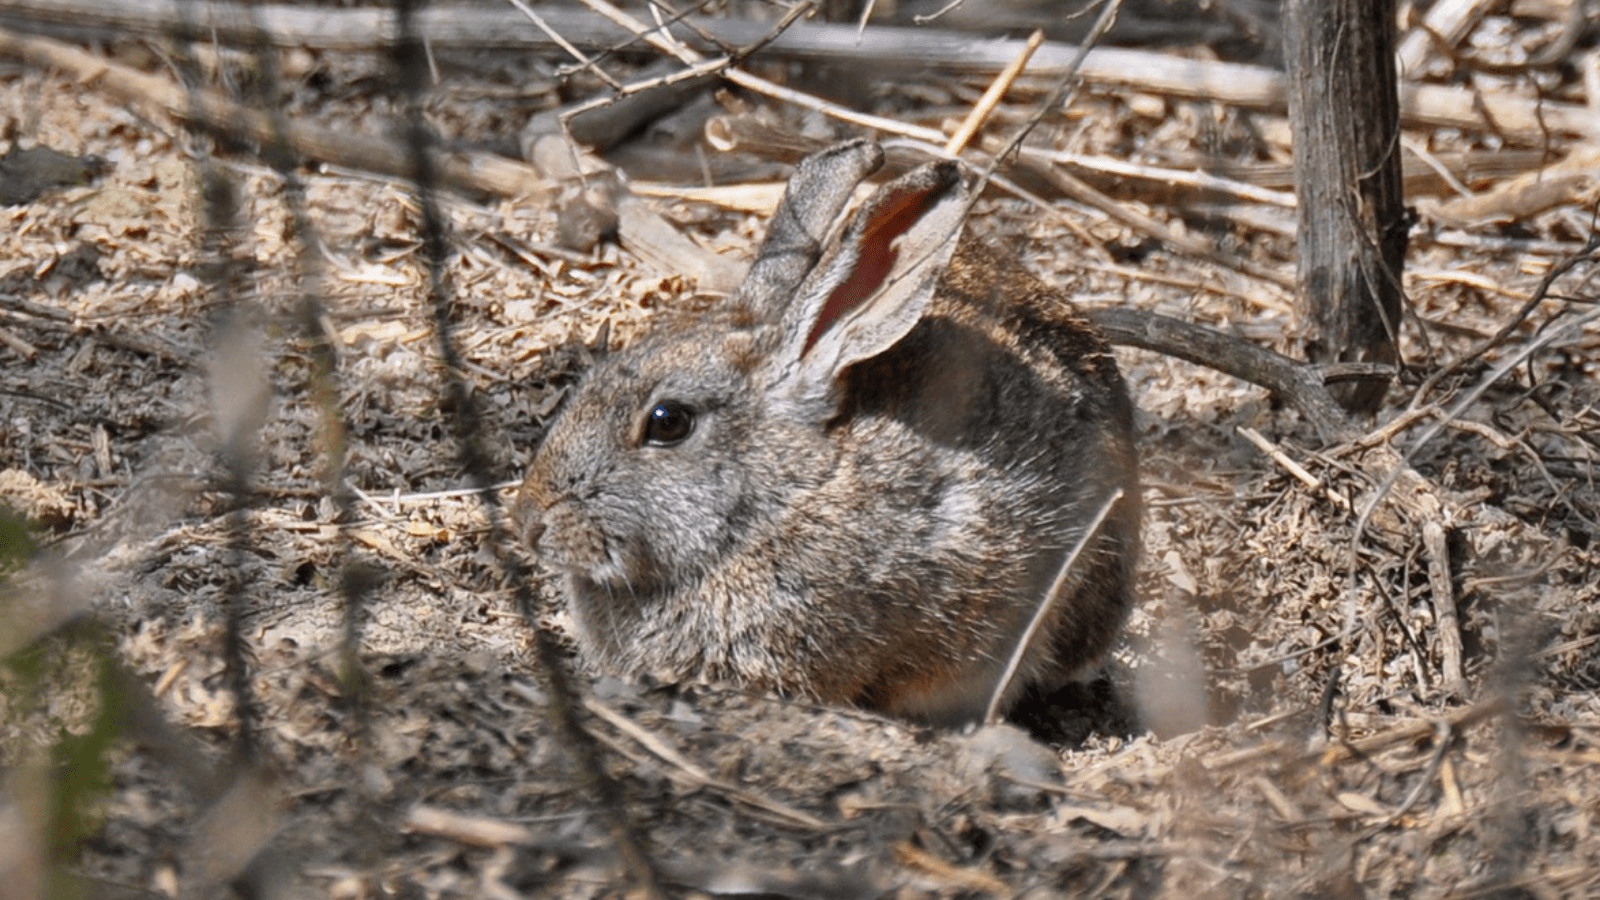 riparian bush rabbit in vegetation